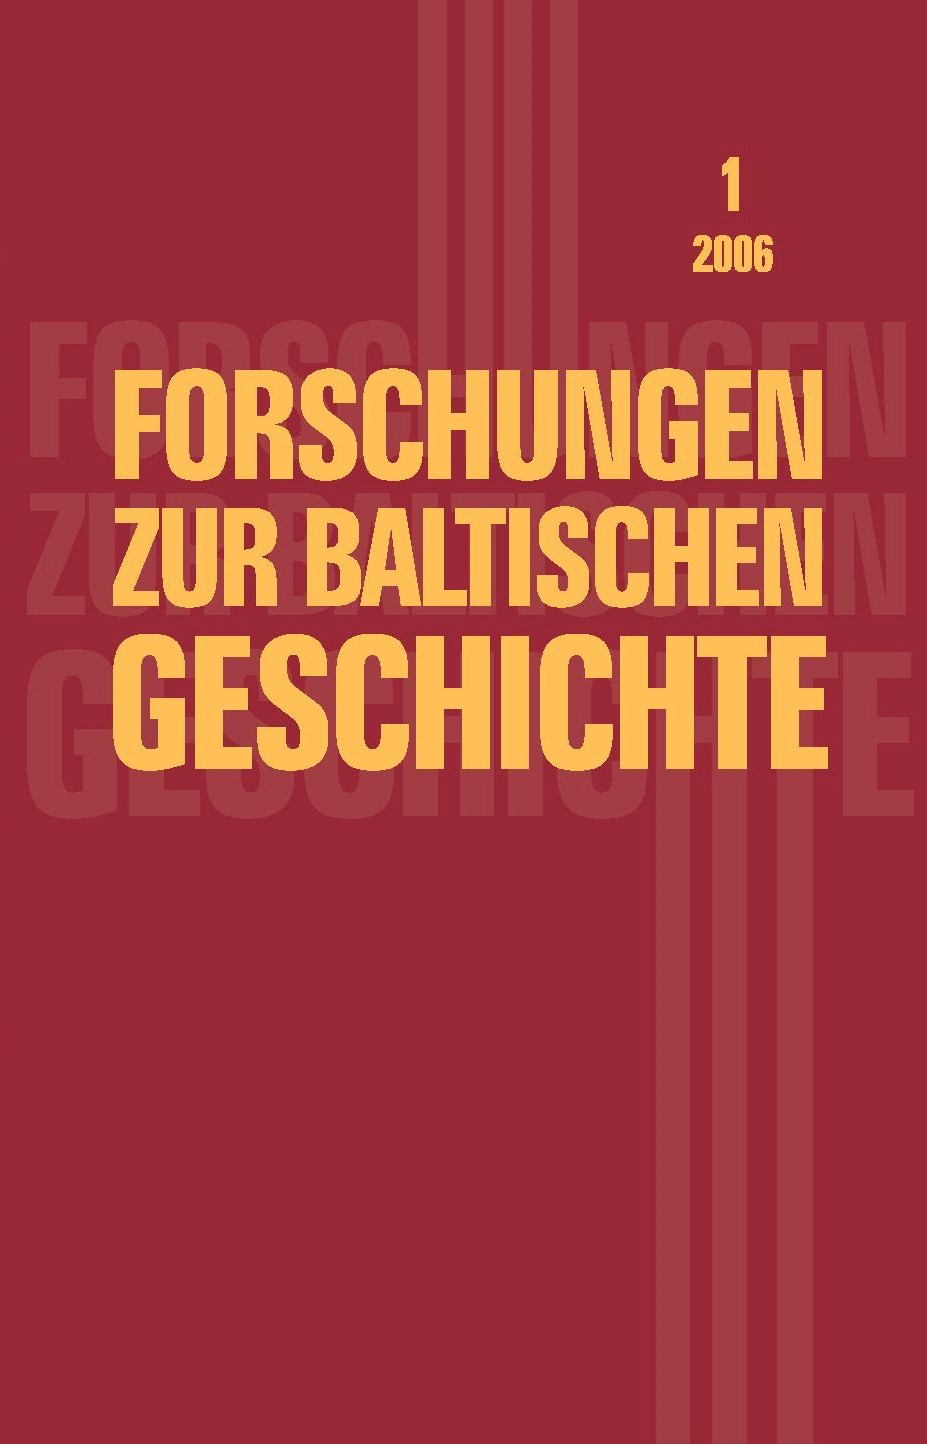 Forschungen zur baltischen Geschichte 1 (2006)